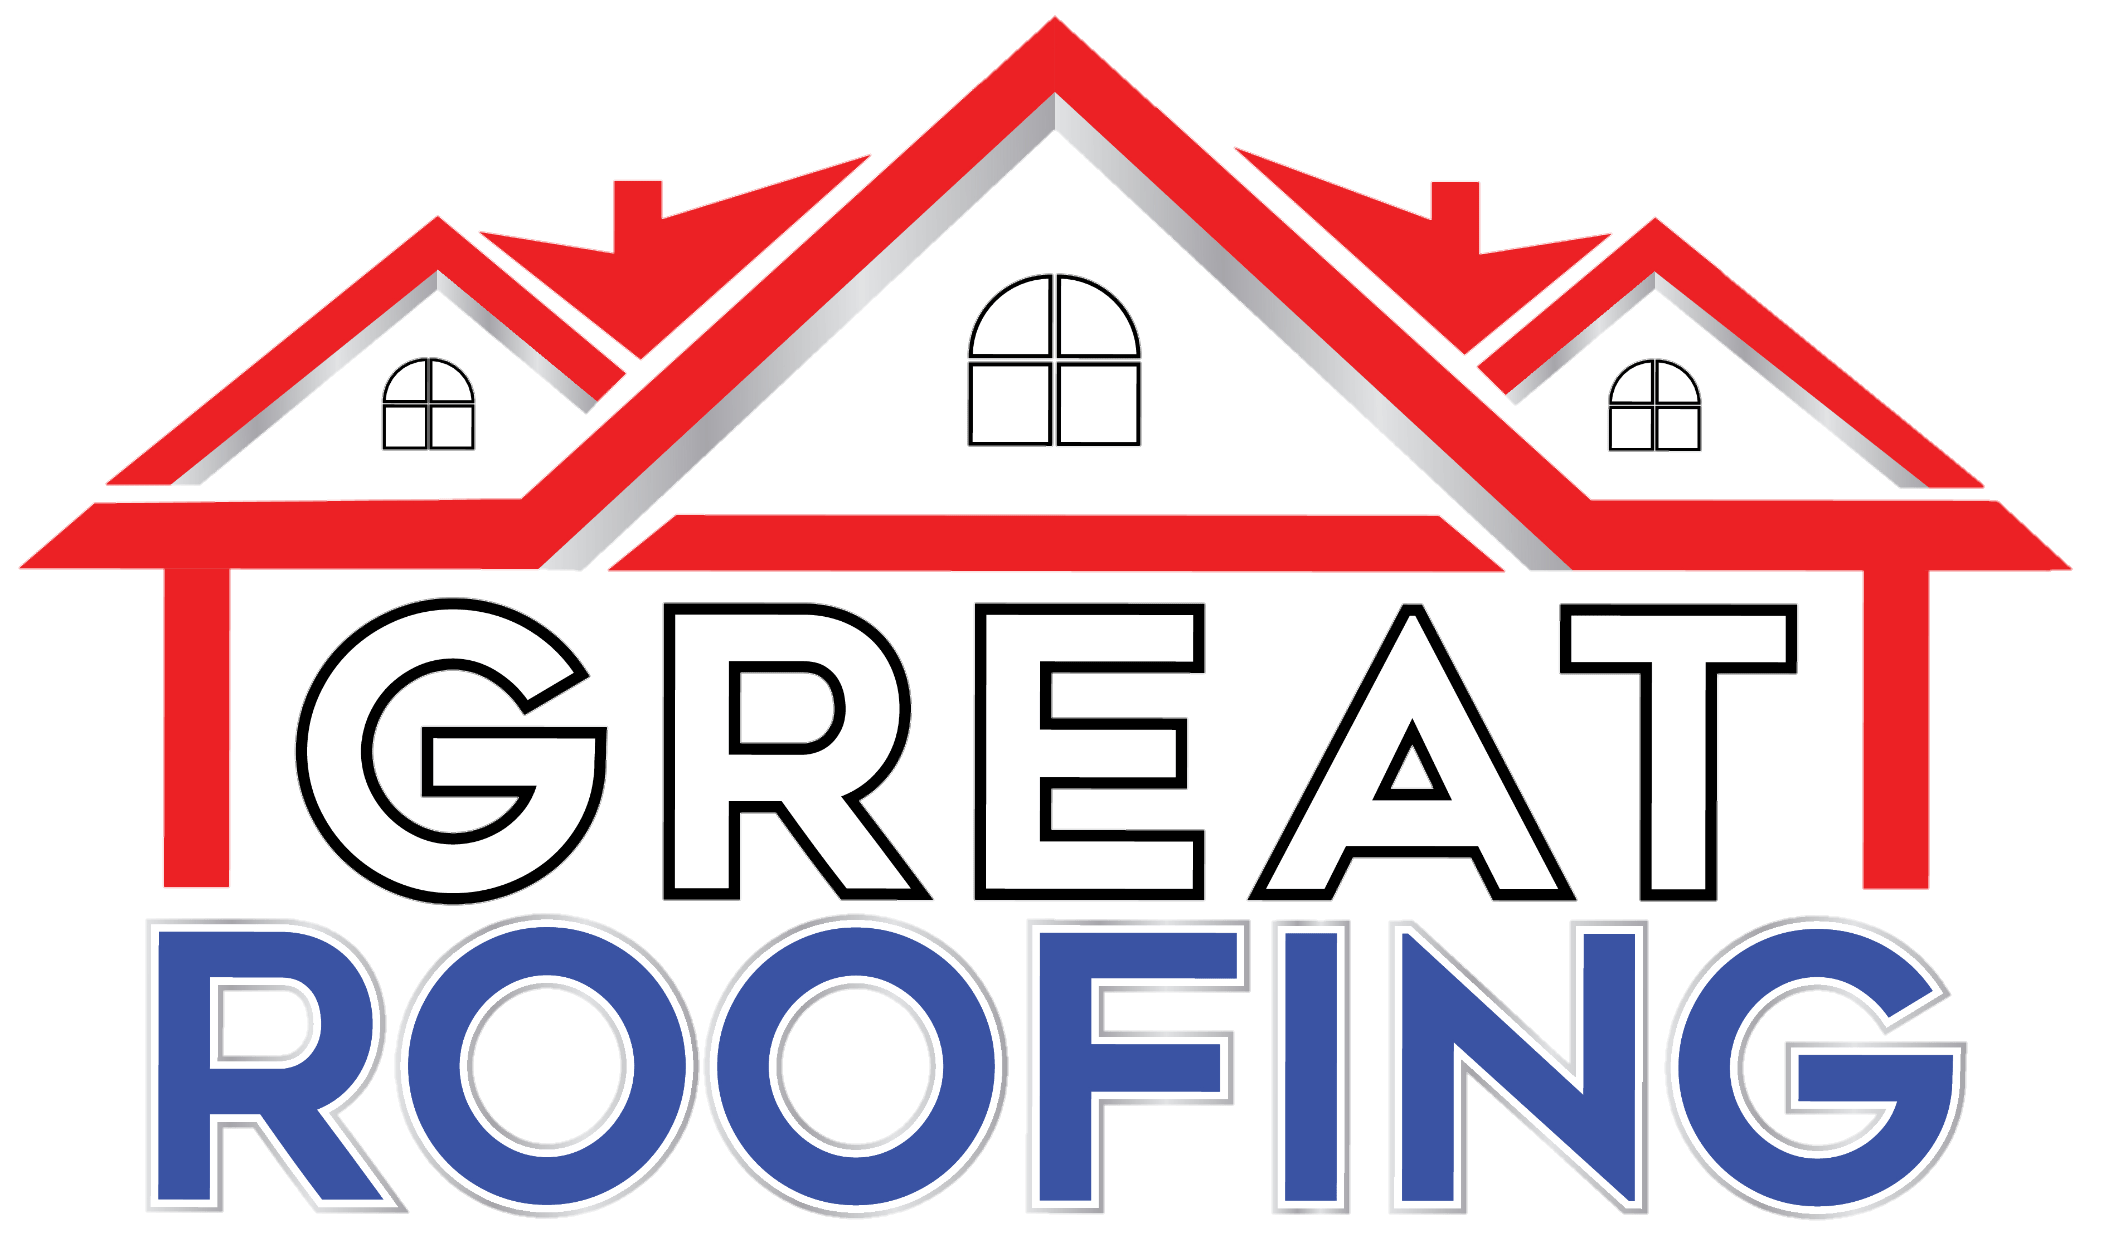 Great Roofing: Joliet Local Roofers